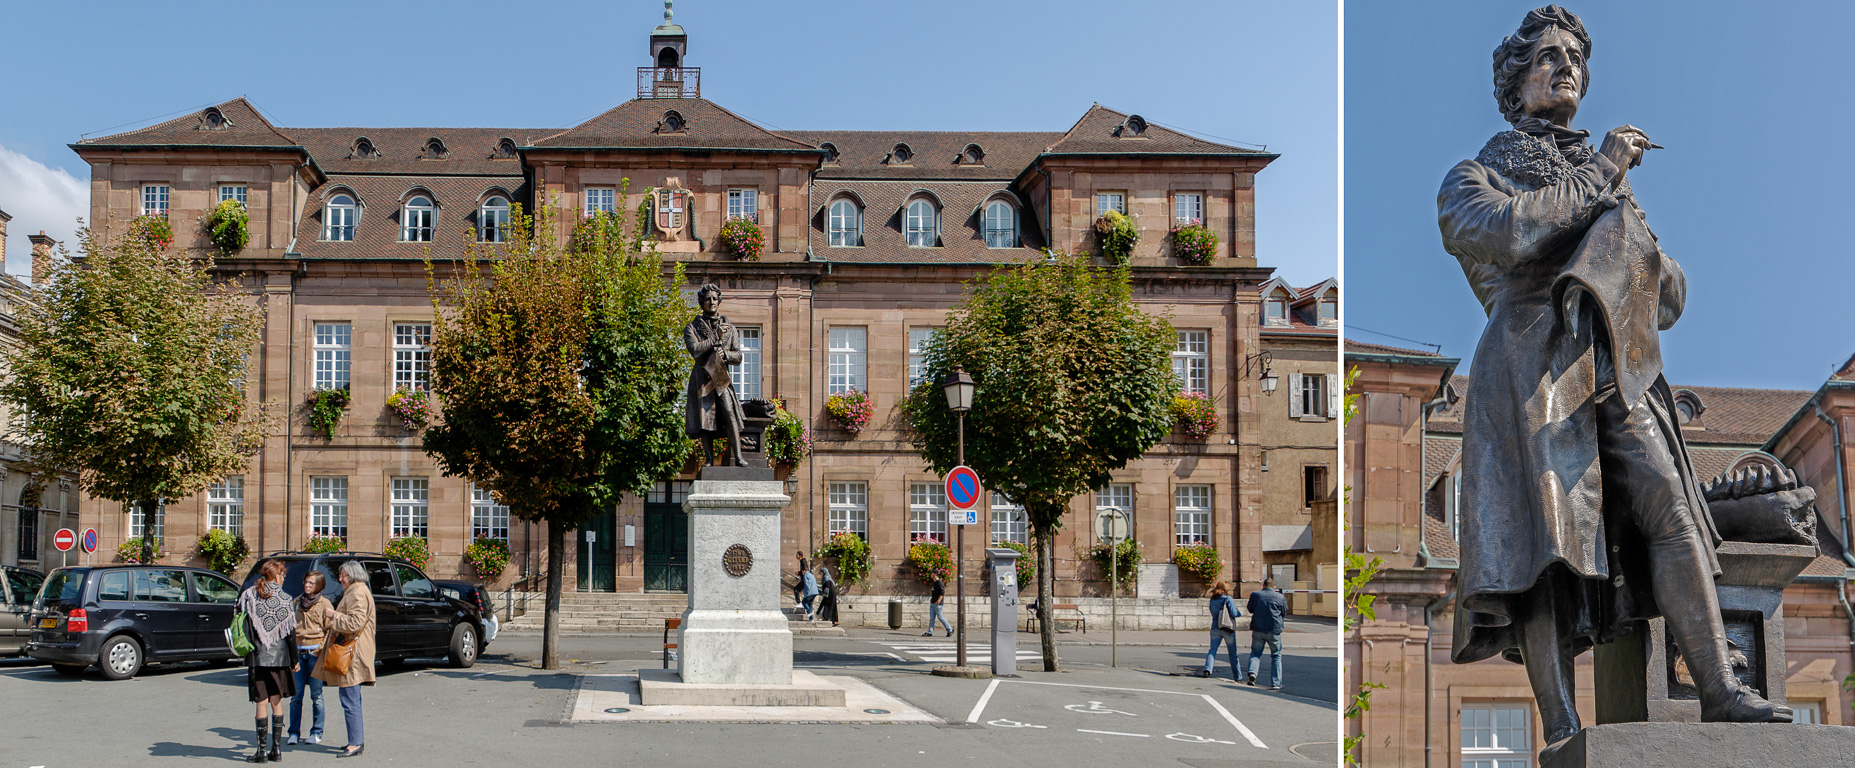 Place Saint-Martin Hôtel de Ville. Statue de Cuvier